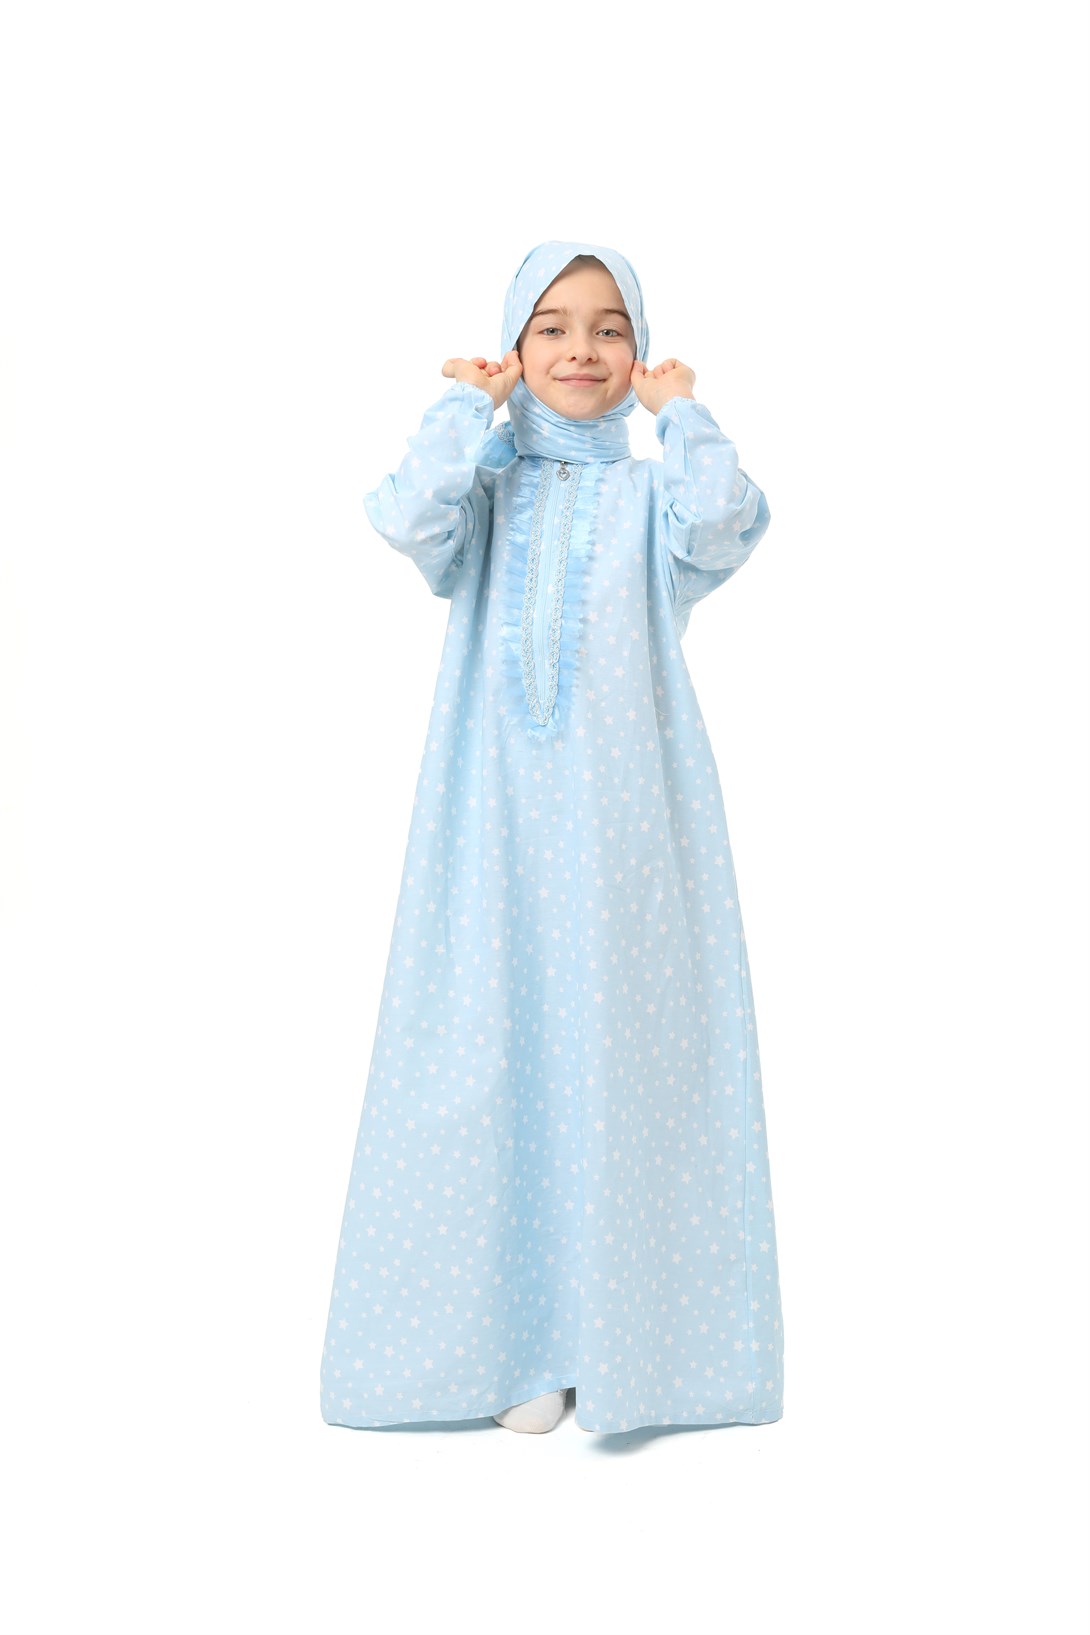 Practical Zippered Cotton Girls' Prayer Dress Blue Printed